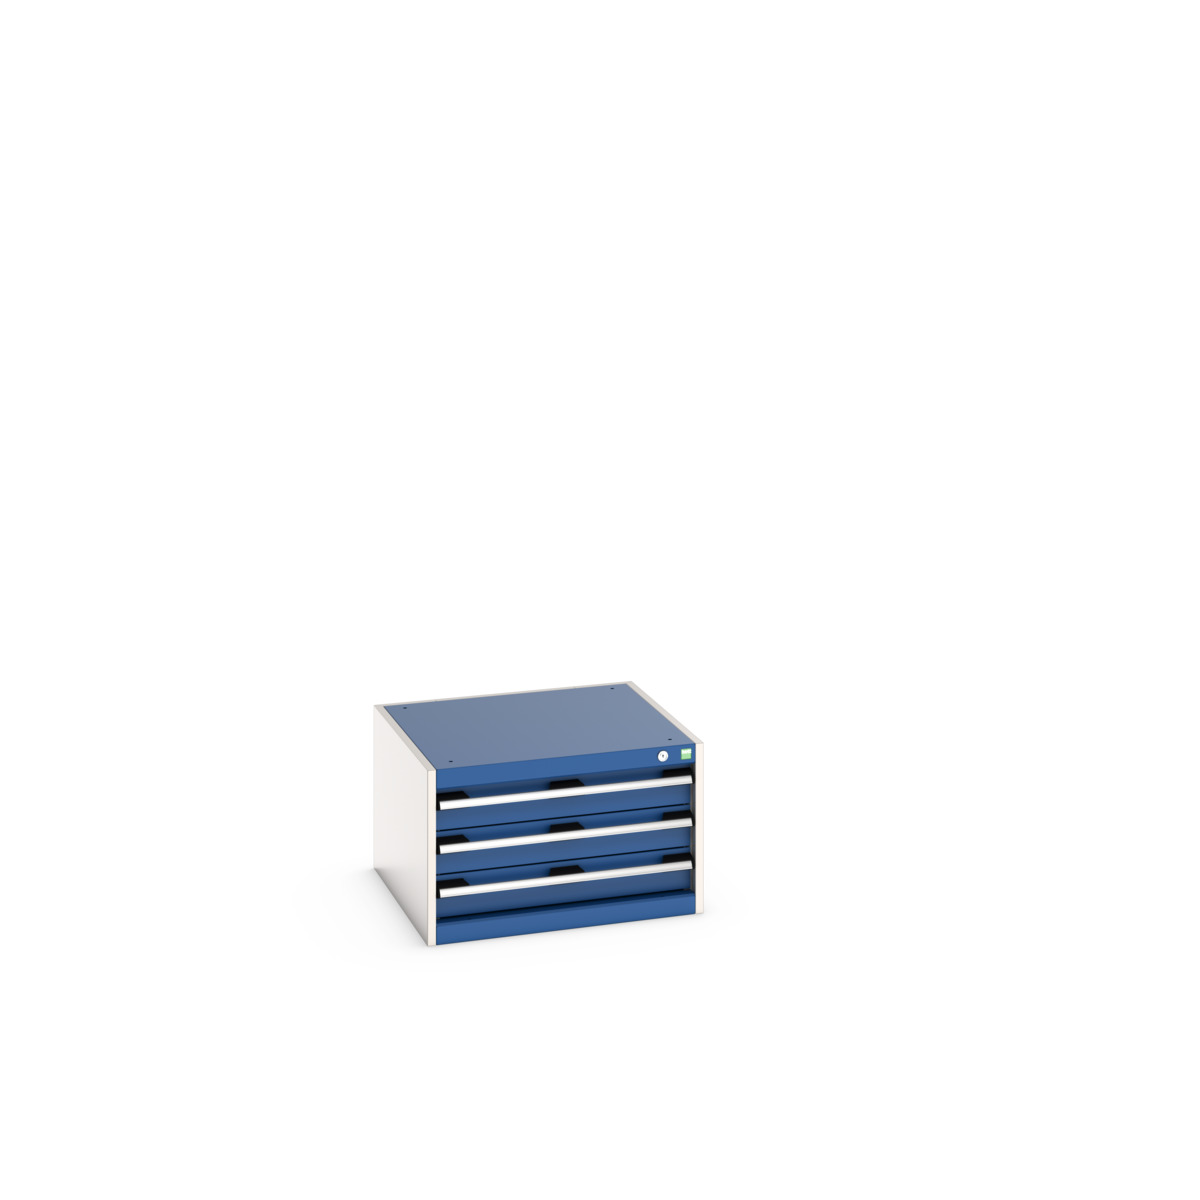 40019009.11V - cubio drawer cabinet